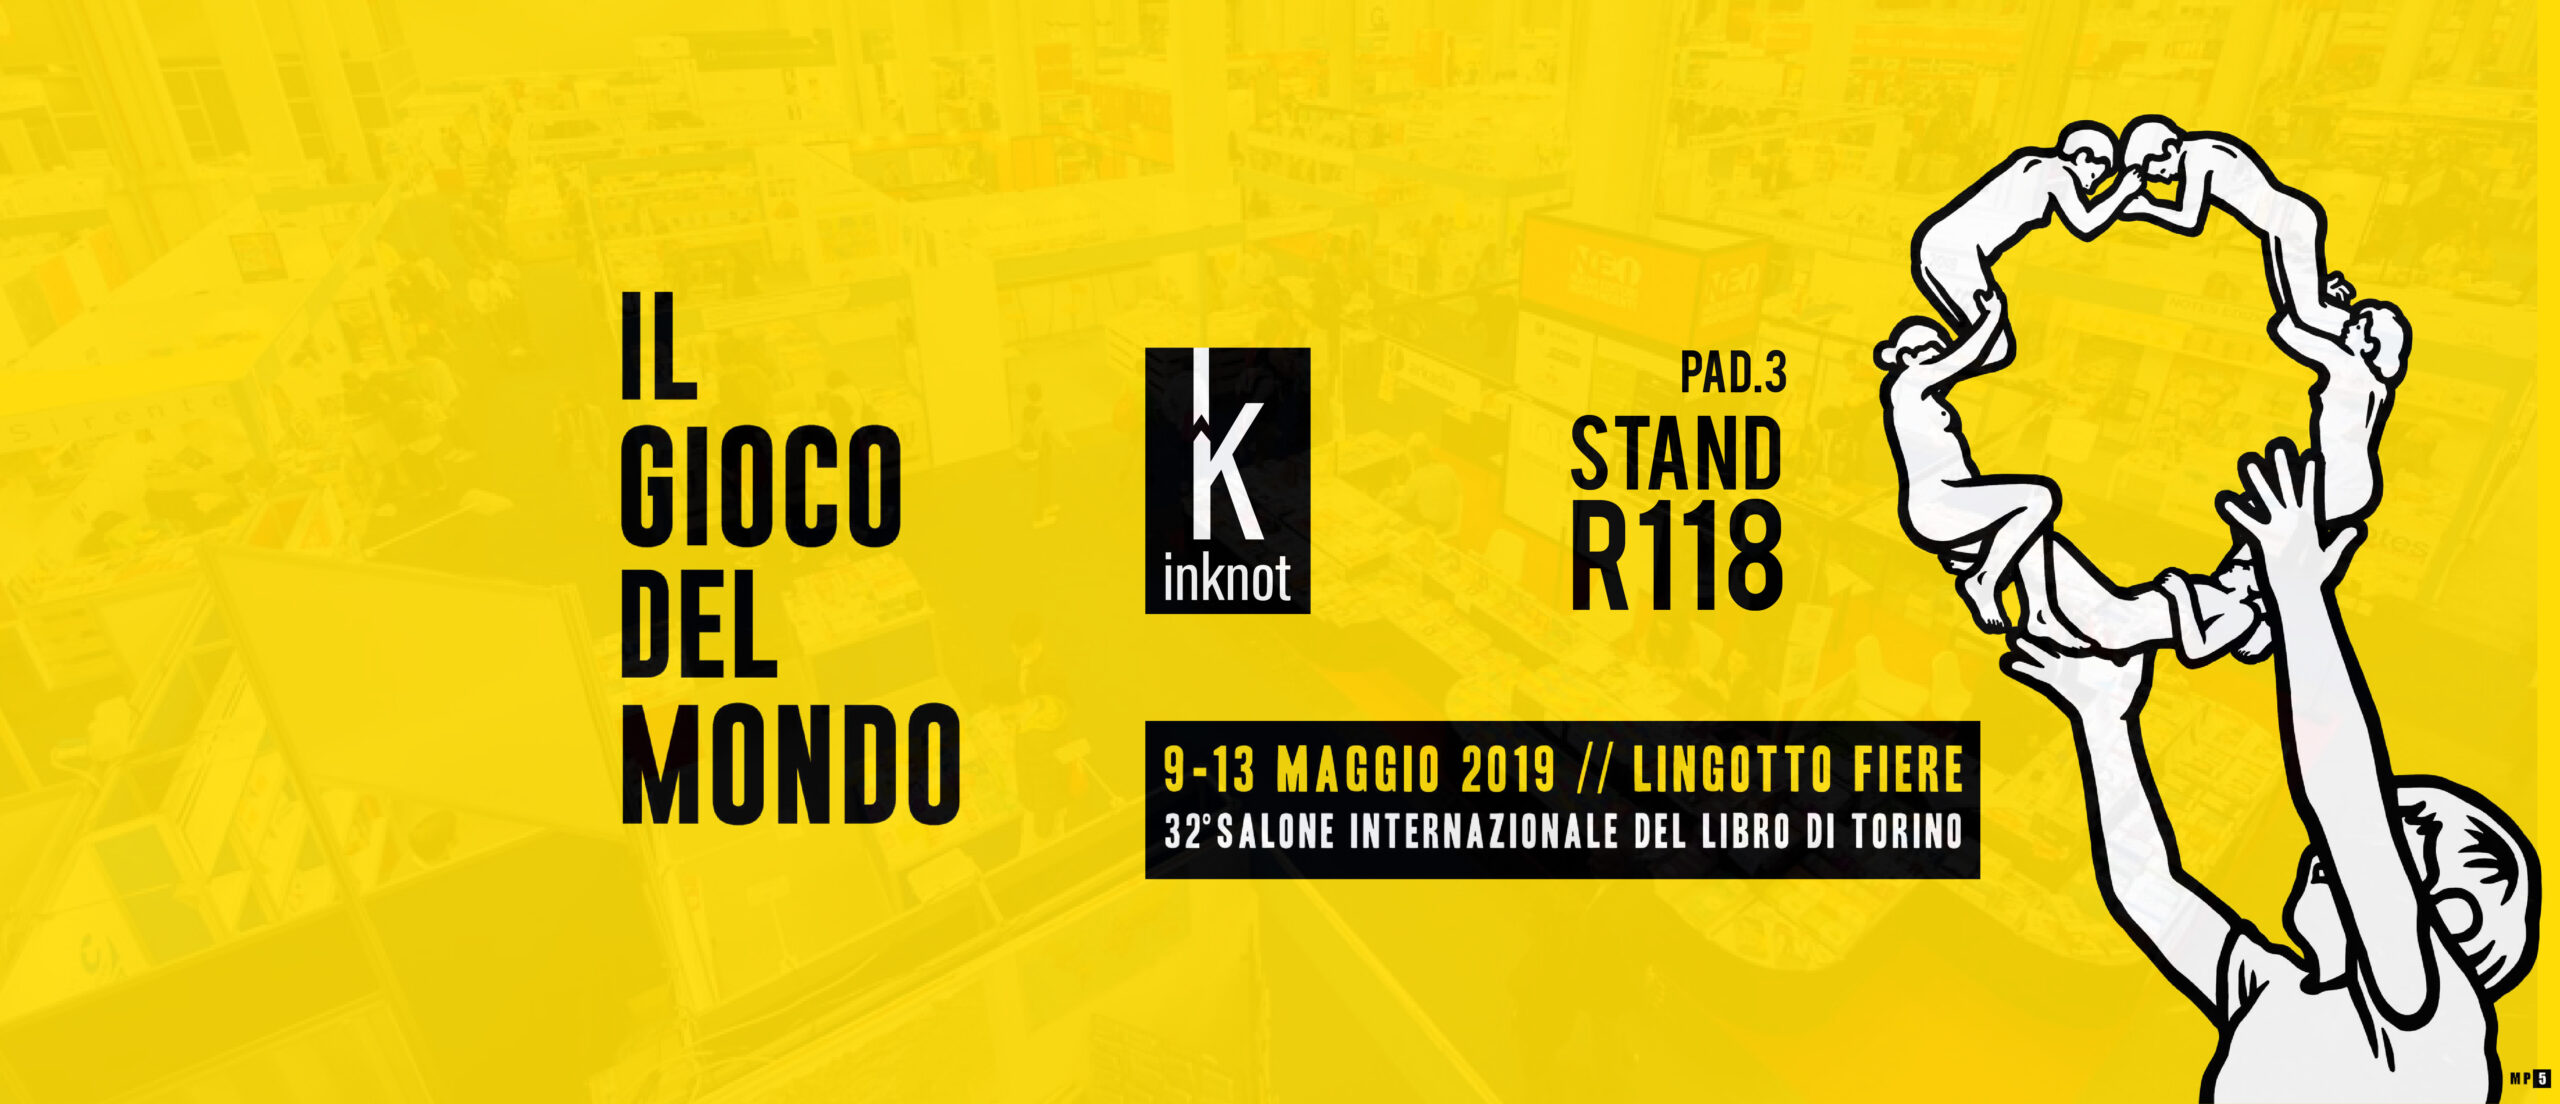 Salone internazionale del libro di Torino 2019 – Buona la prima!